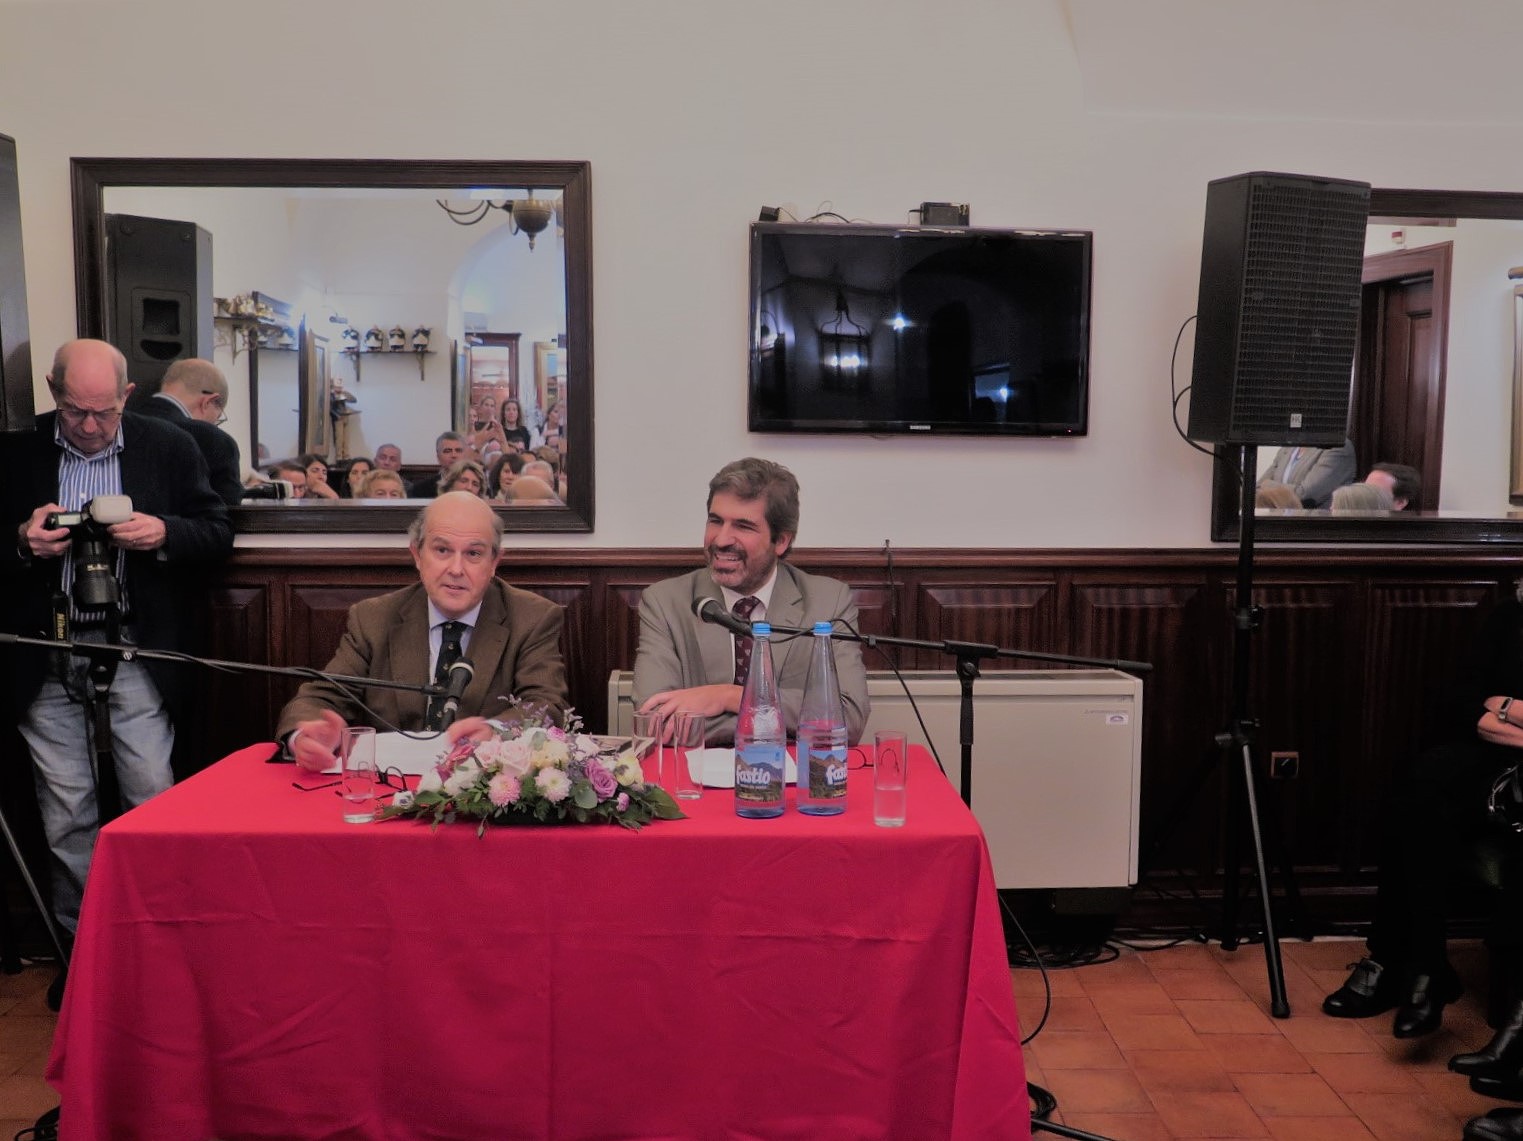 Em plena PASTELARIA BENARD, Miguel Tamen e João Bernardo Galvão-Telles, na apresentação do livro “BENARD - Um século e meio a adoçar Lisboa”